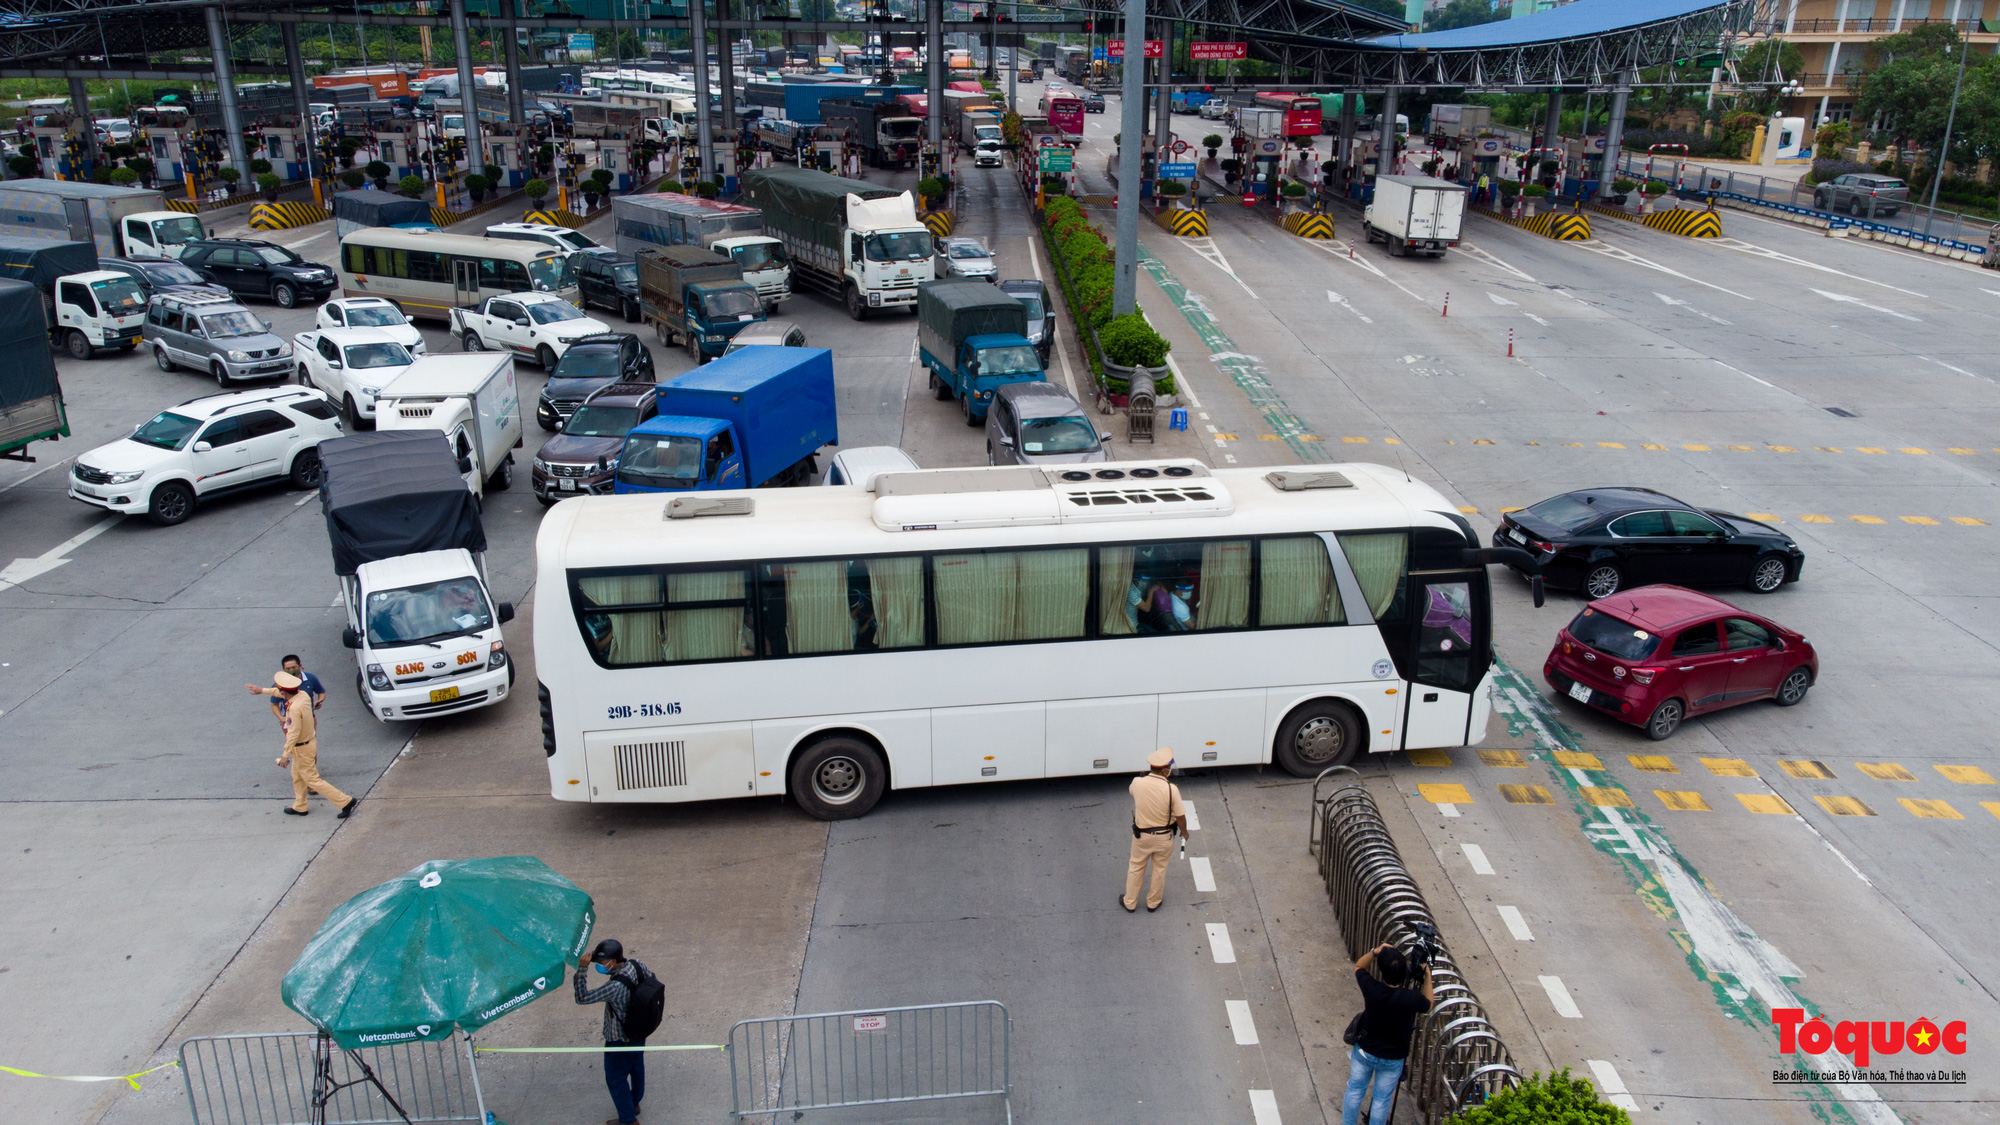 Hà Nội: Hình ảnh phương tiện xếp hàng dài cả km tại cửa ngõ phía Nam Thủ đô - Ảnh 9.